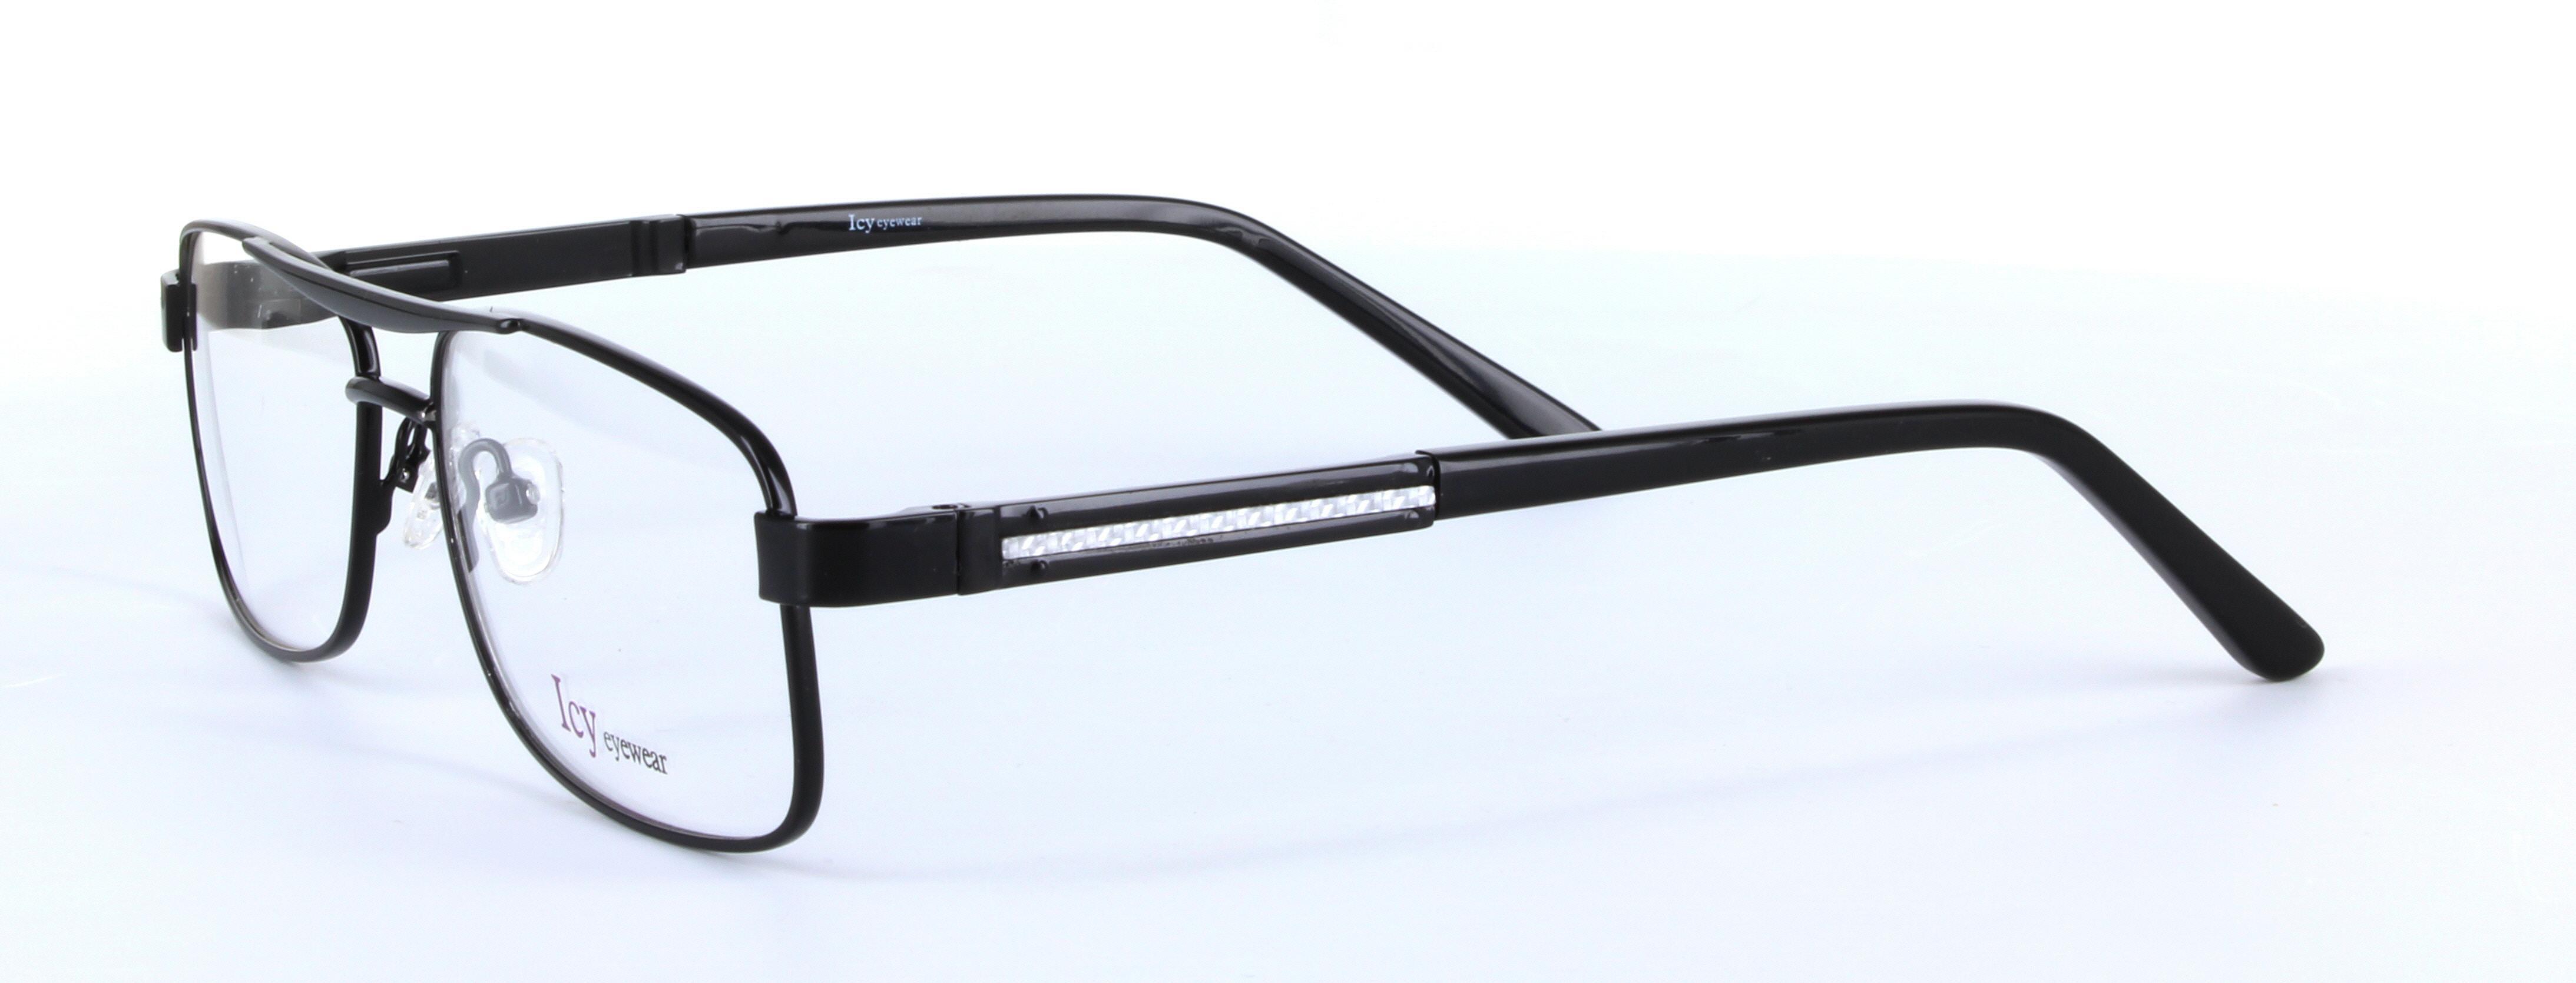 Derek Black Full Rim Aviator Metal Glasses - Image View 2